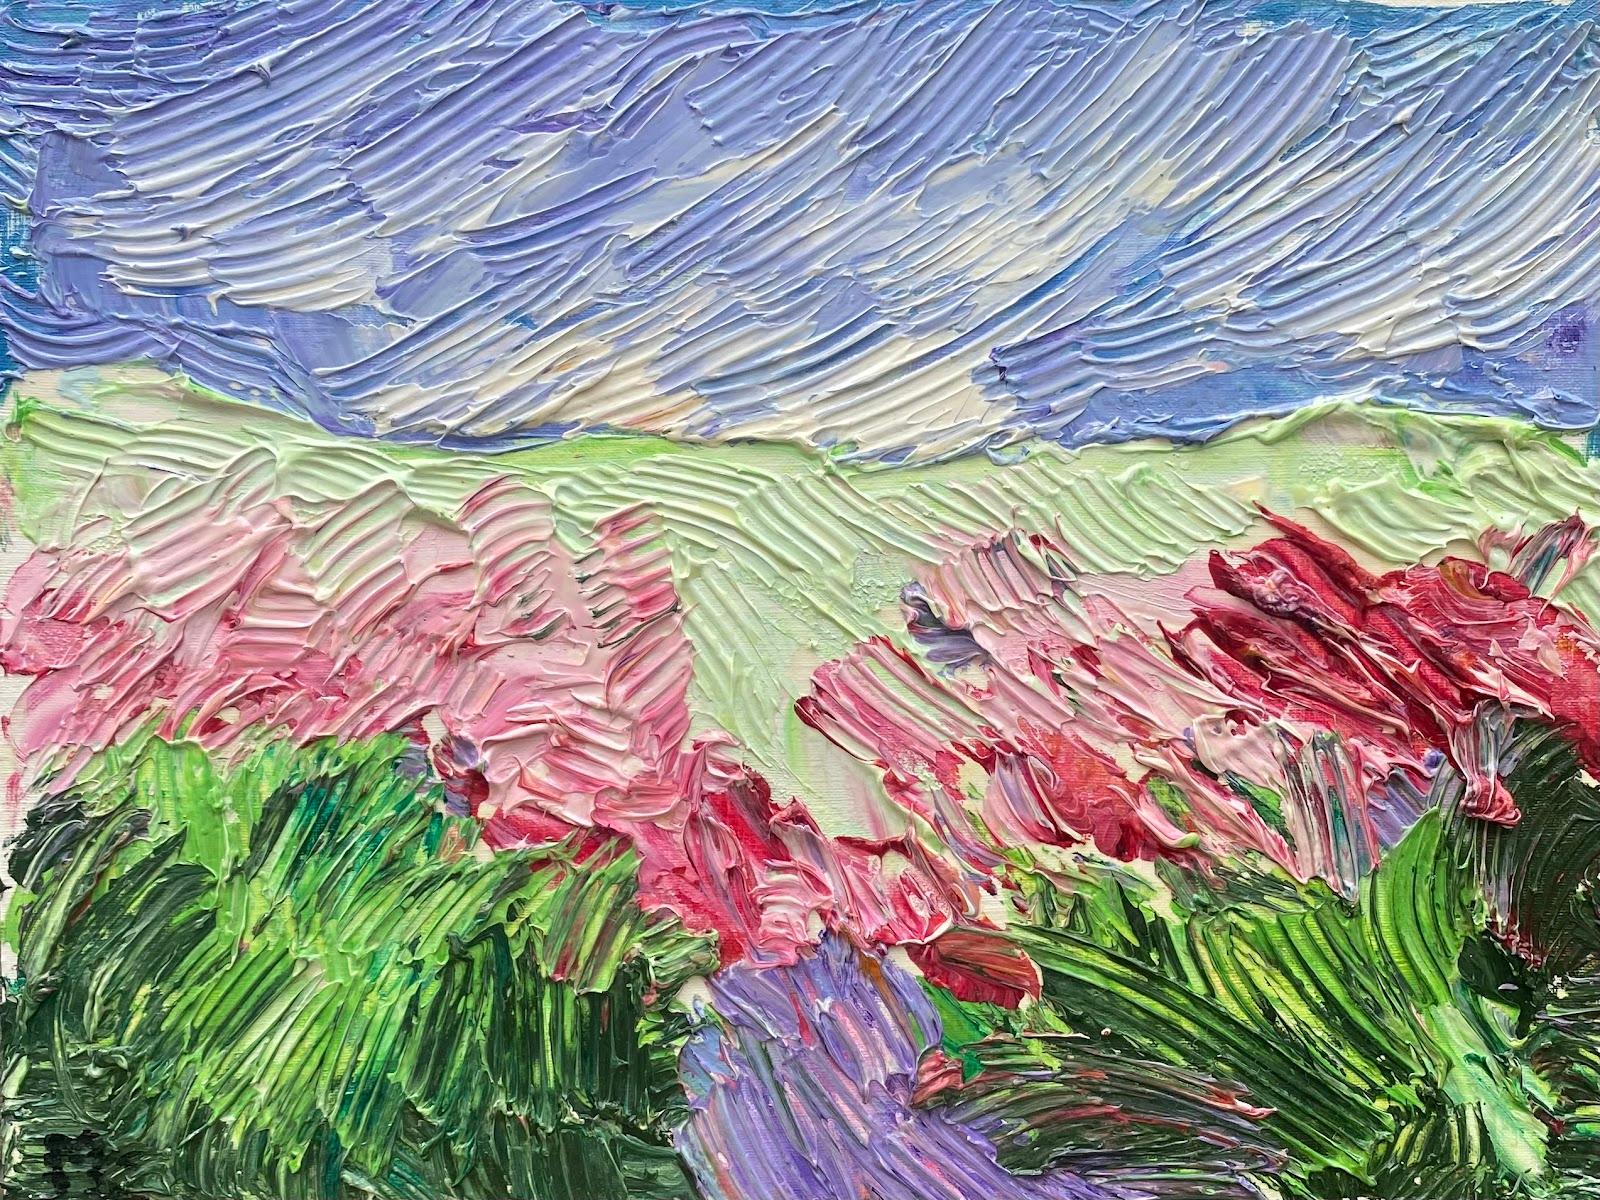 Abstract Painting Maggy Clarysse - Peinture à l'huile impressionniste - Paysage français - Moulin à fleurs - Bright & Colorful